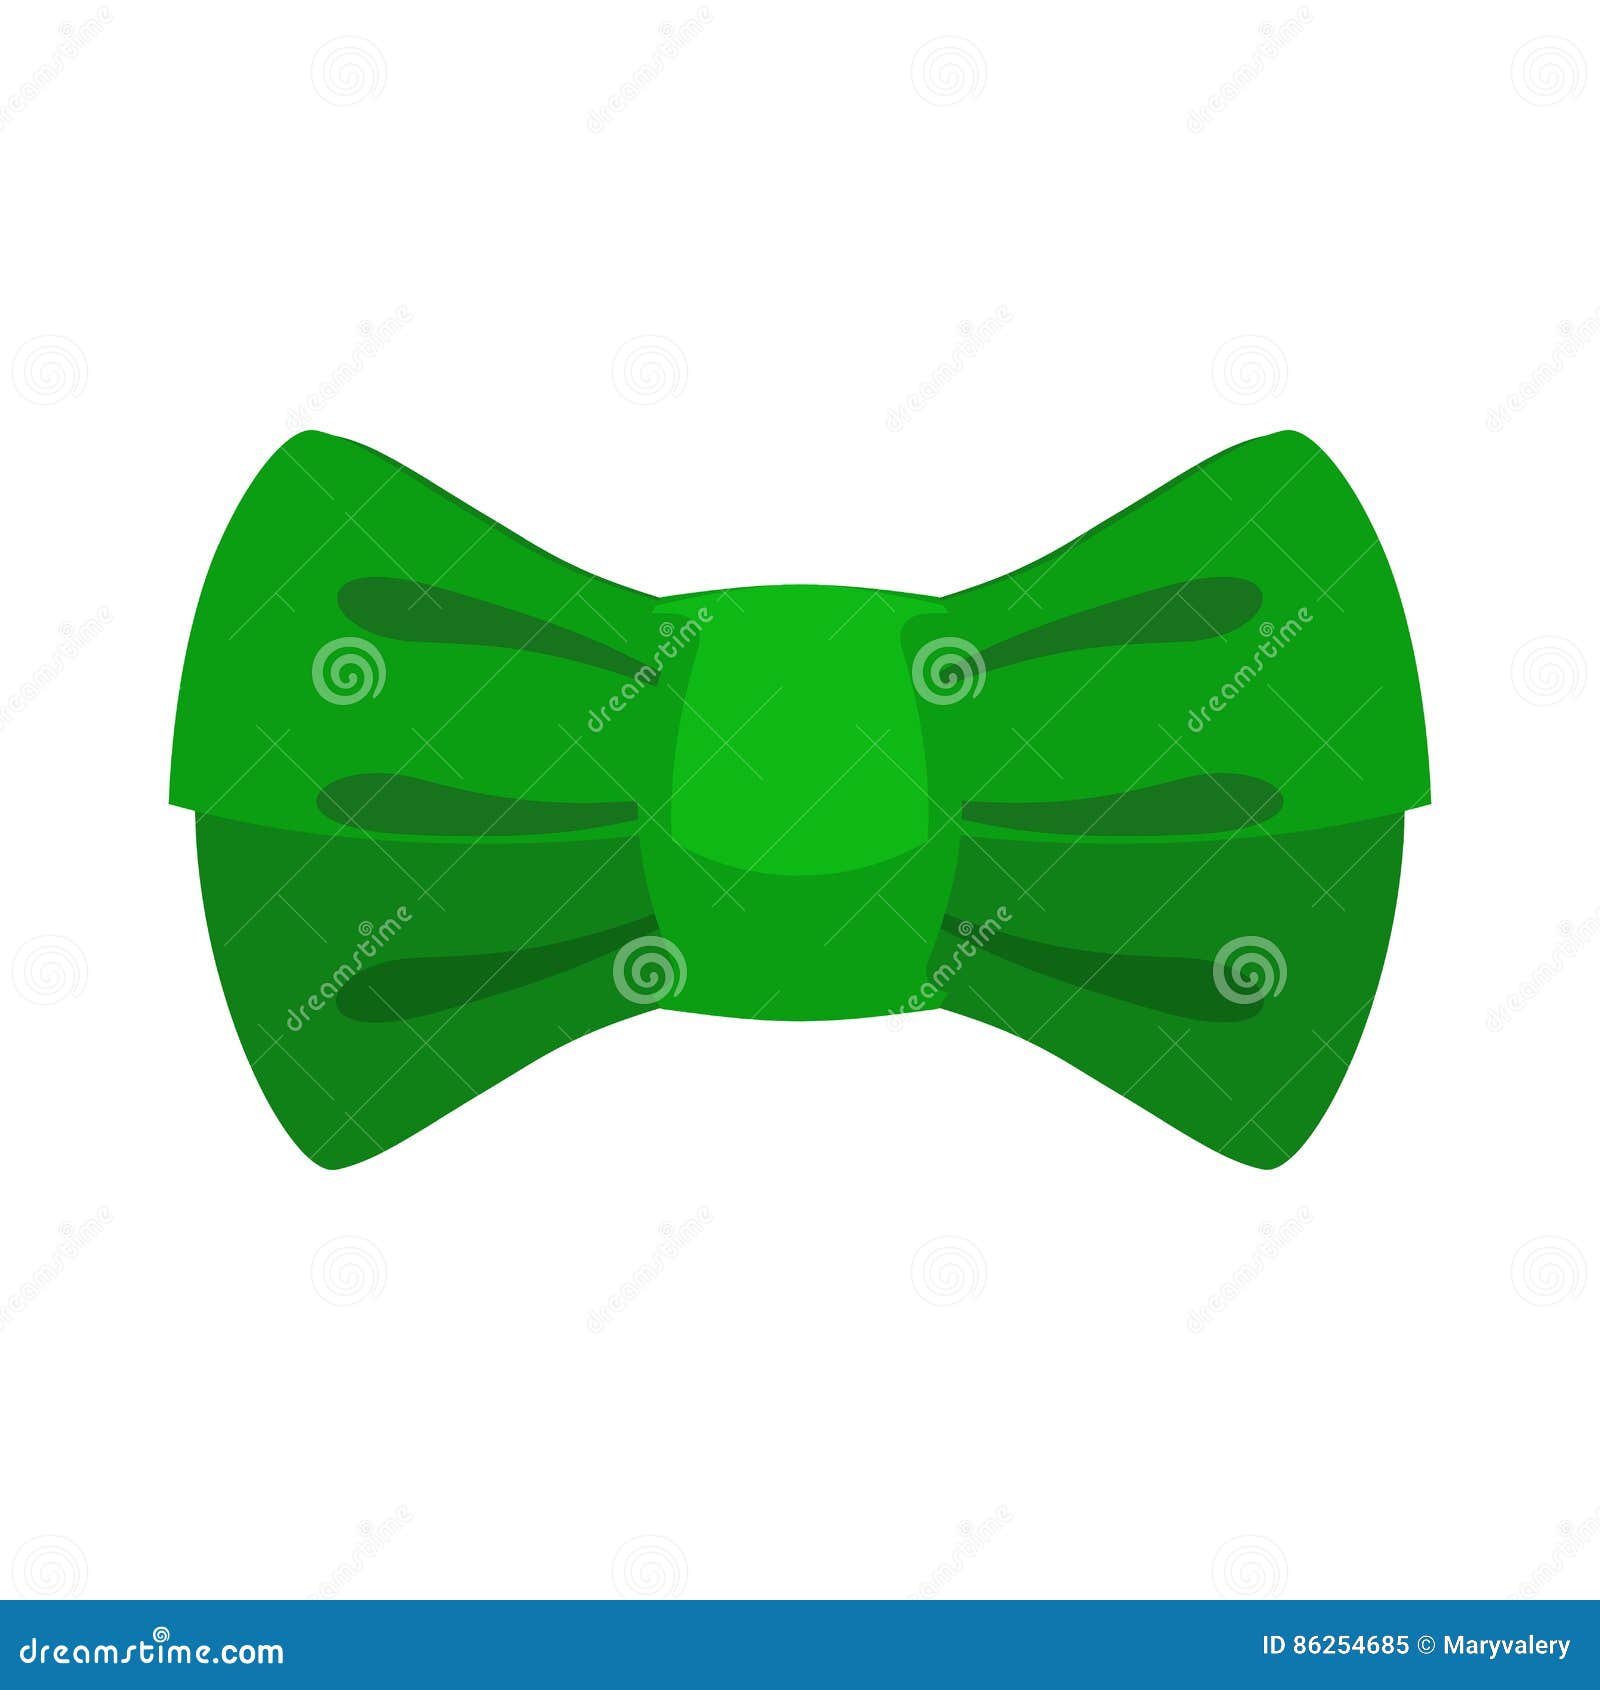 leprechaun bow tie green. traditional accessory fairy gnome in i